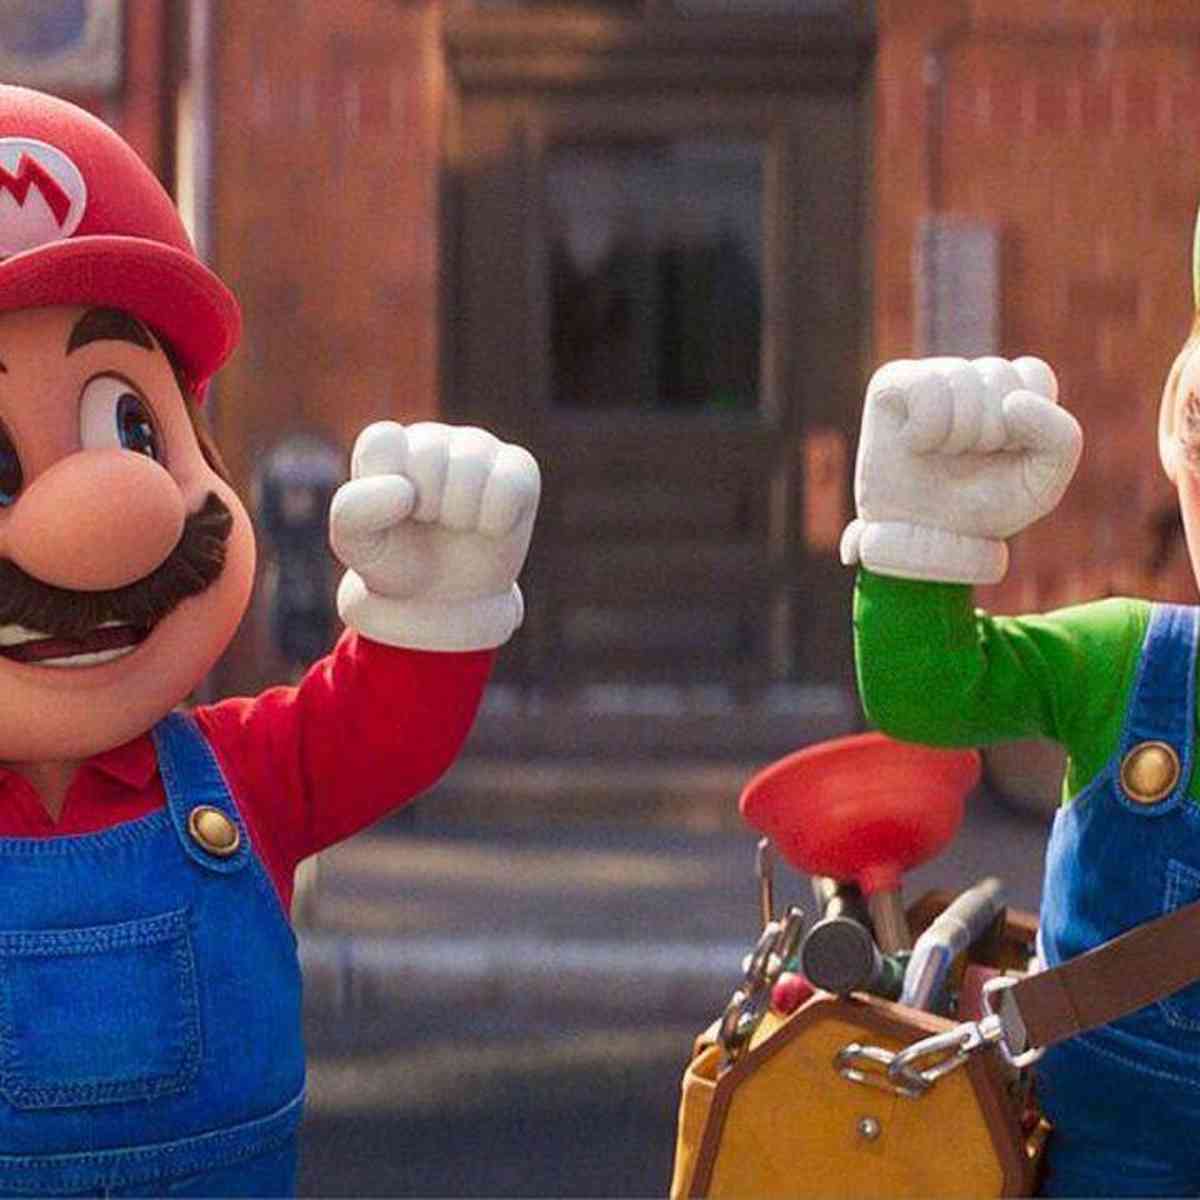 Super Mario Bros.” vai bater US$ 1 bilhão de bilheteria nesta semana -  POPline